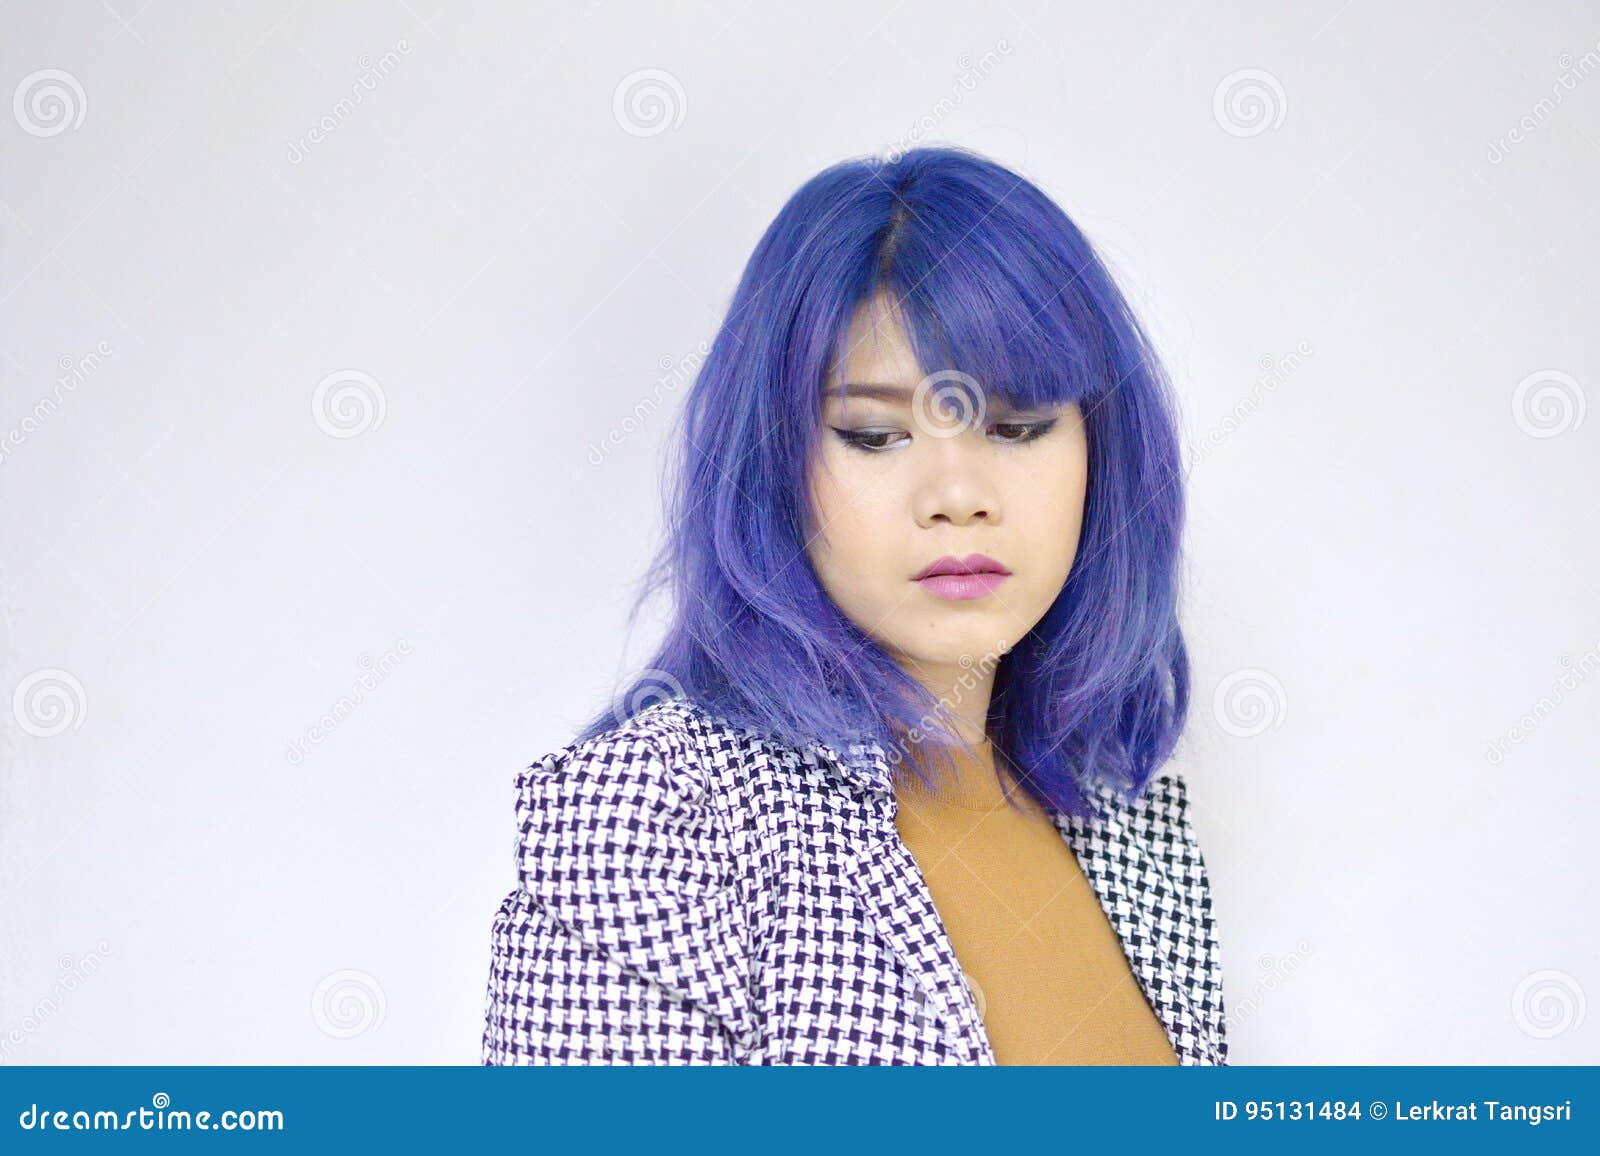 Blue Hair Asian - wide 9